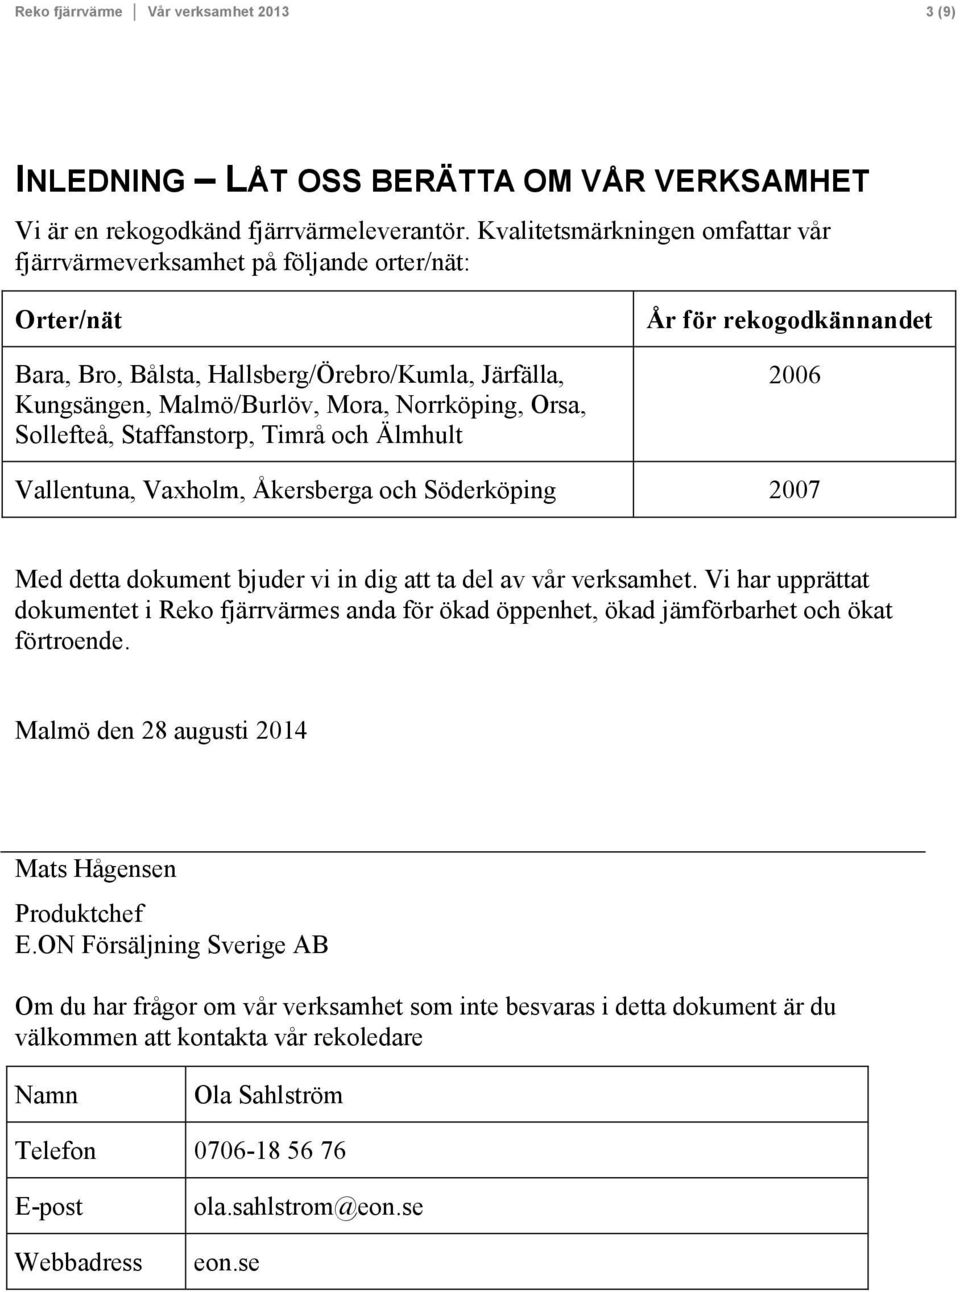 Sollefteå, Staffanstorp, Timrå och Älmhult År för rekogodkännandet 2006 Vallentuna, Vaxholm, Åkersberga och Söderköping 2007 Med detta dokument bjuder vi in dig att ta del av vår verksamhet.